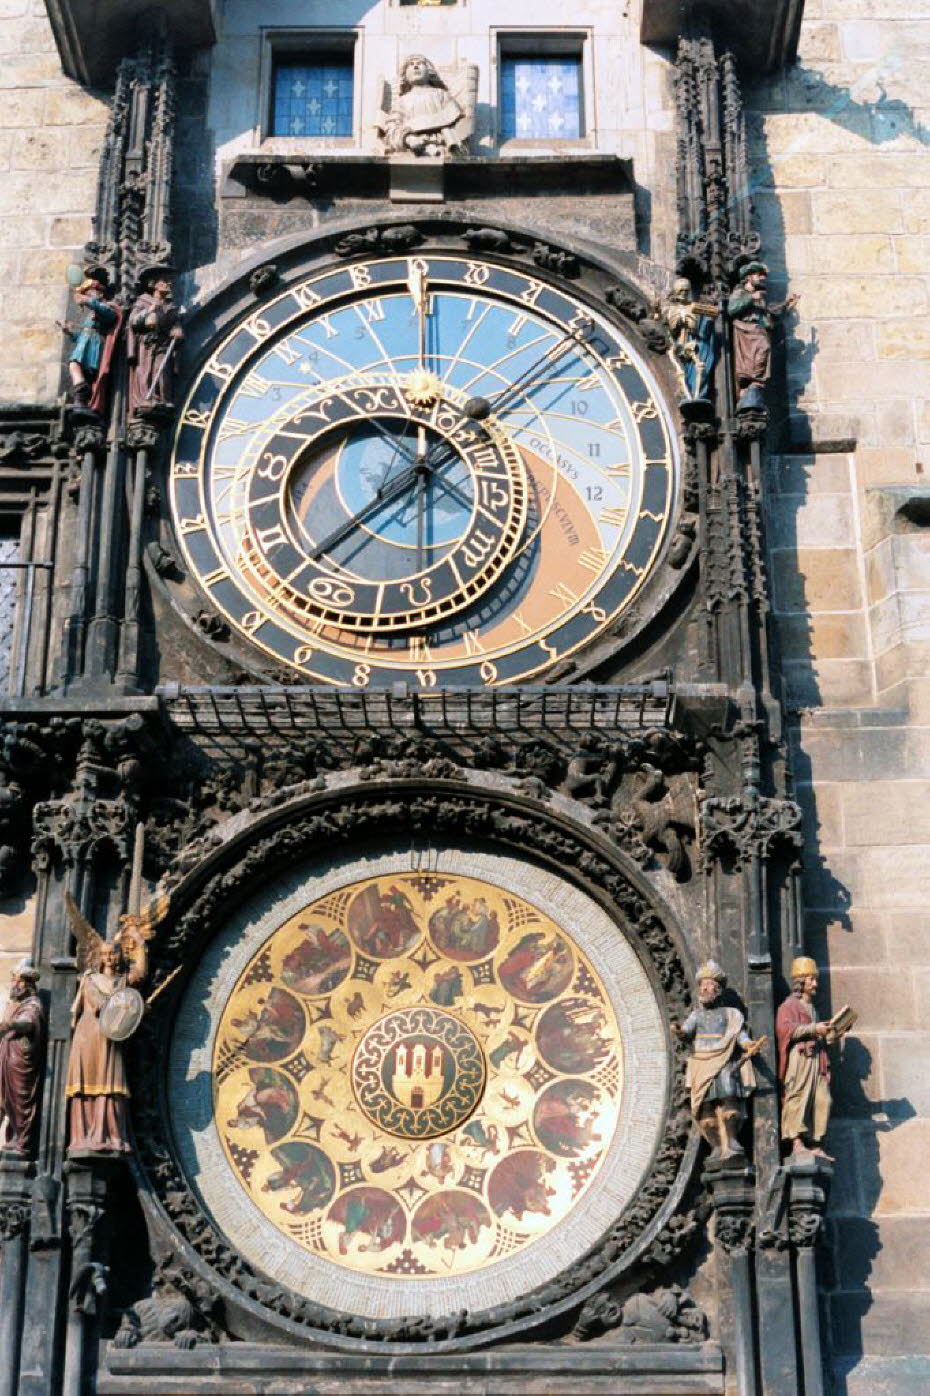 Die Astronomische Uhr ist eine Leistung von Mathematik, Kunst und Technik:Das Rathaus (mit der über 600 Jahre alten berühmten astronomischen Uhr) Die Astronomische Uhr ist eine Leistung von Mathematik, Kunst und Technik. Sie ist über 600 Jahre alt. Regelm¬